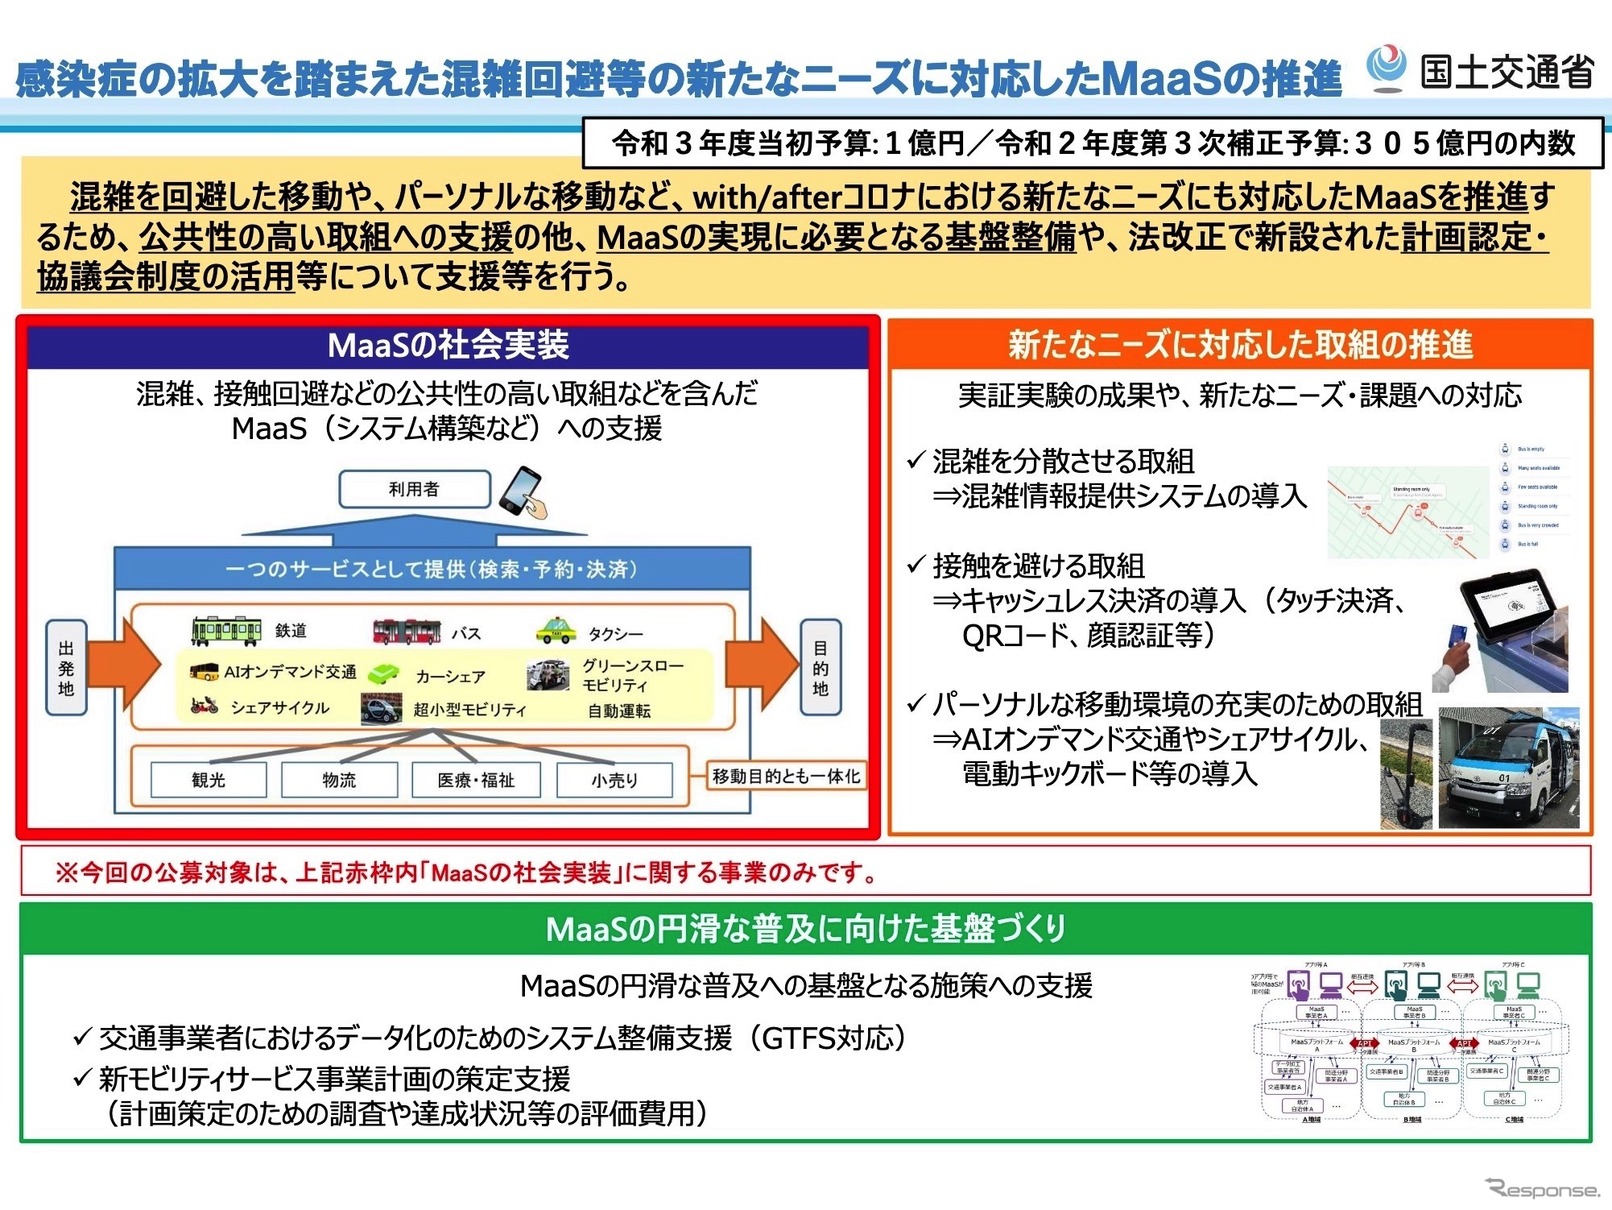 日本版MaaSの社会実装を支援する事業の概要